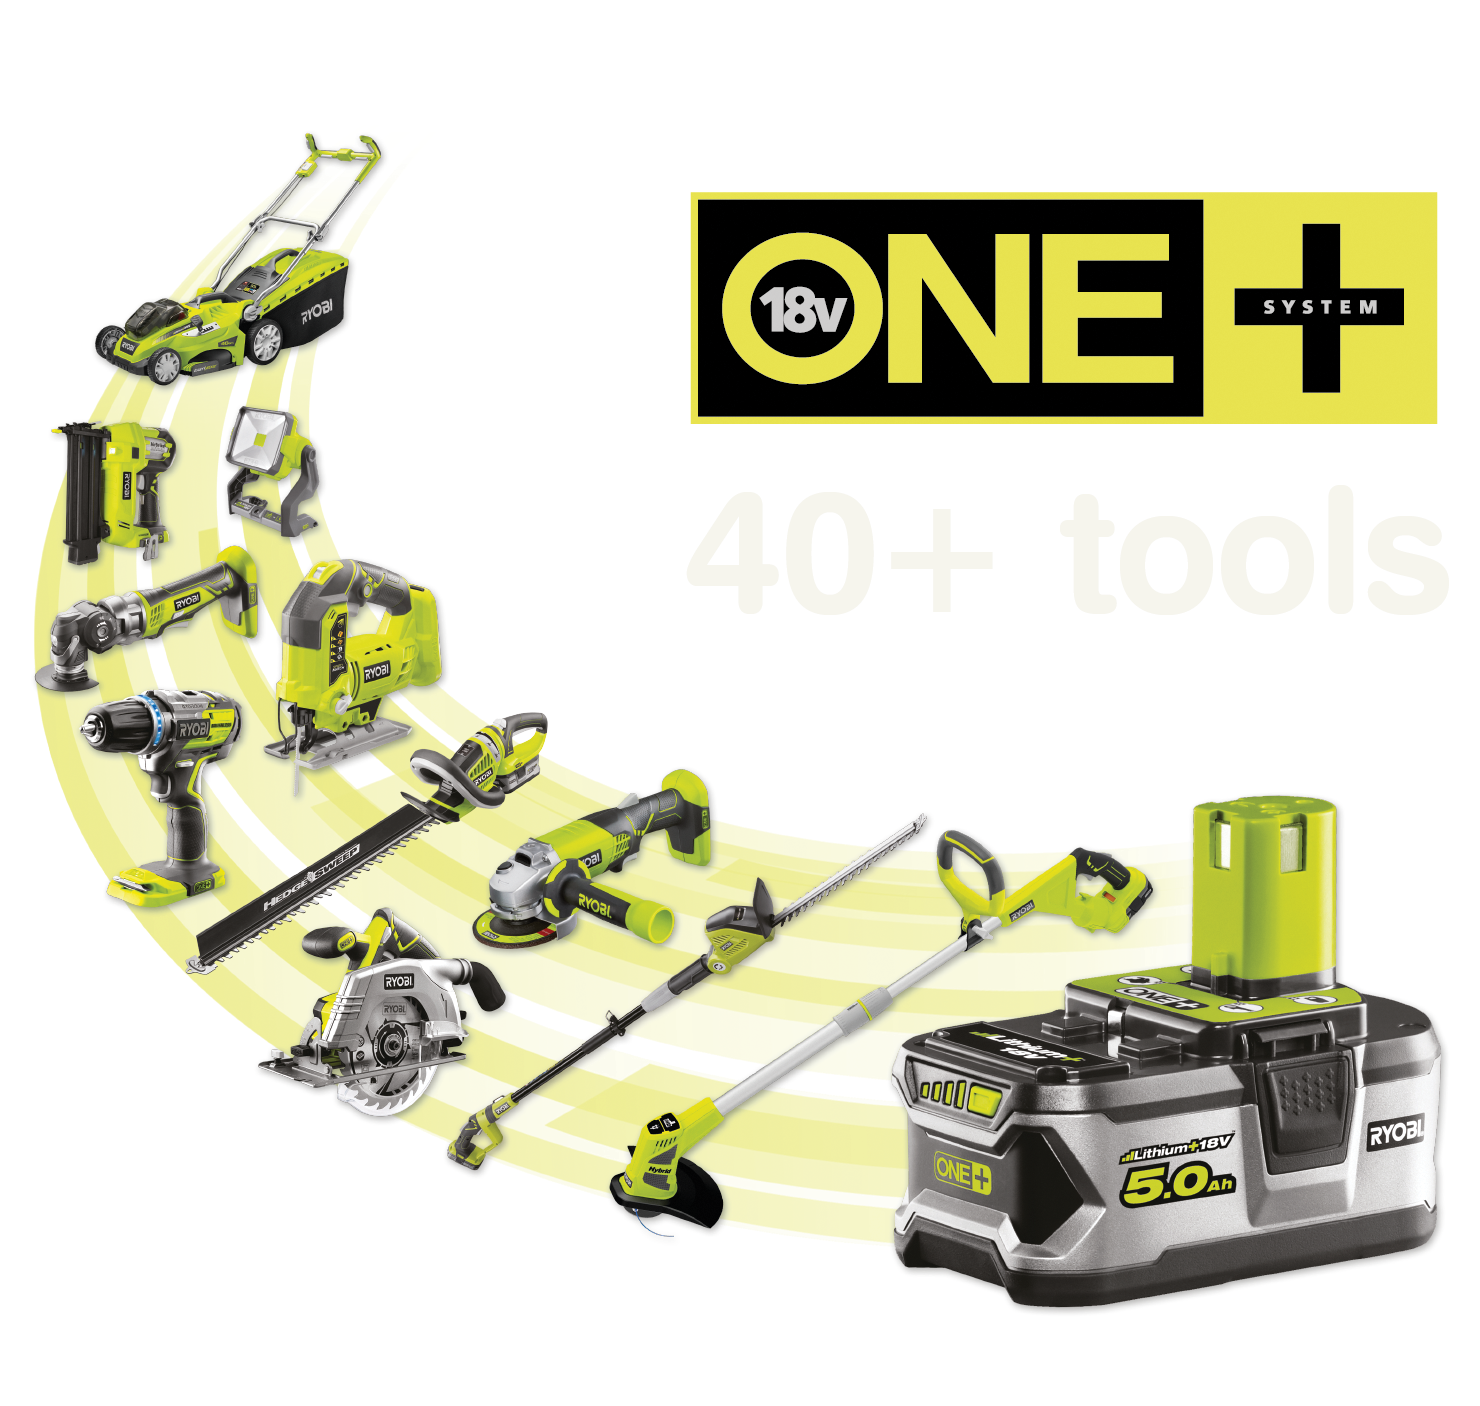 Över 40+ verktyg som drivs av samma ONE+-batteri